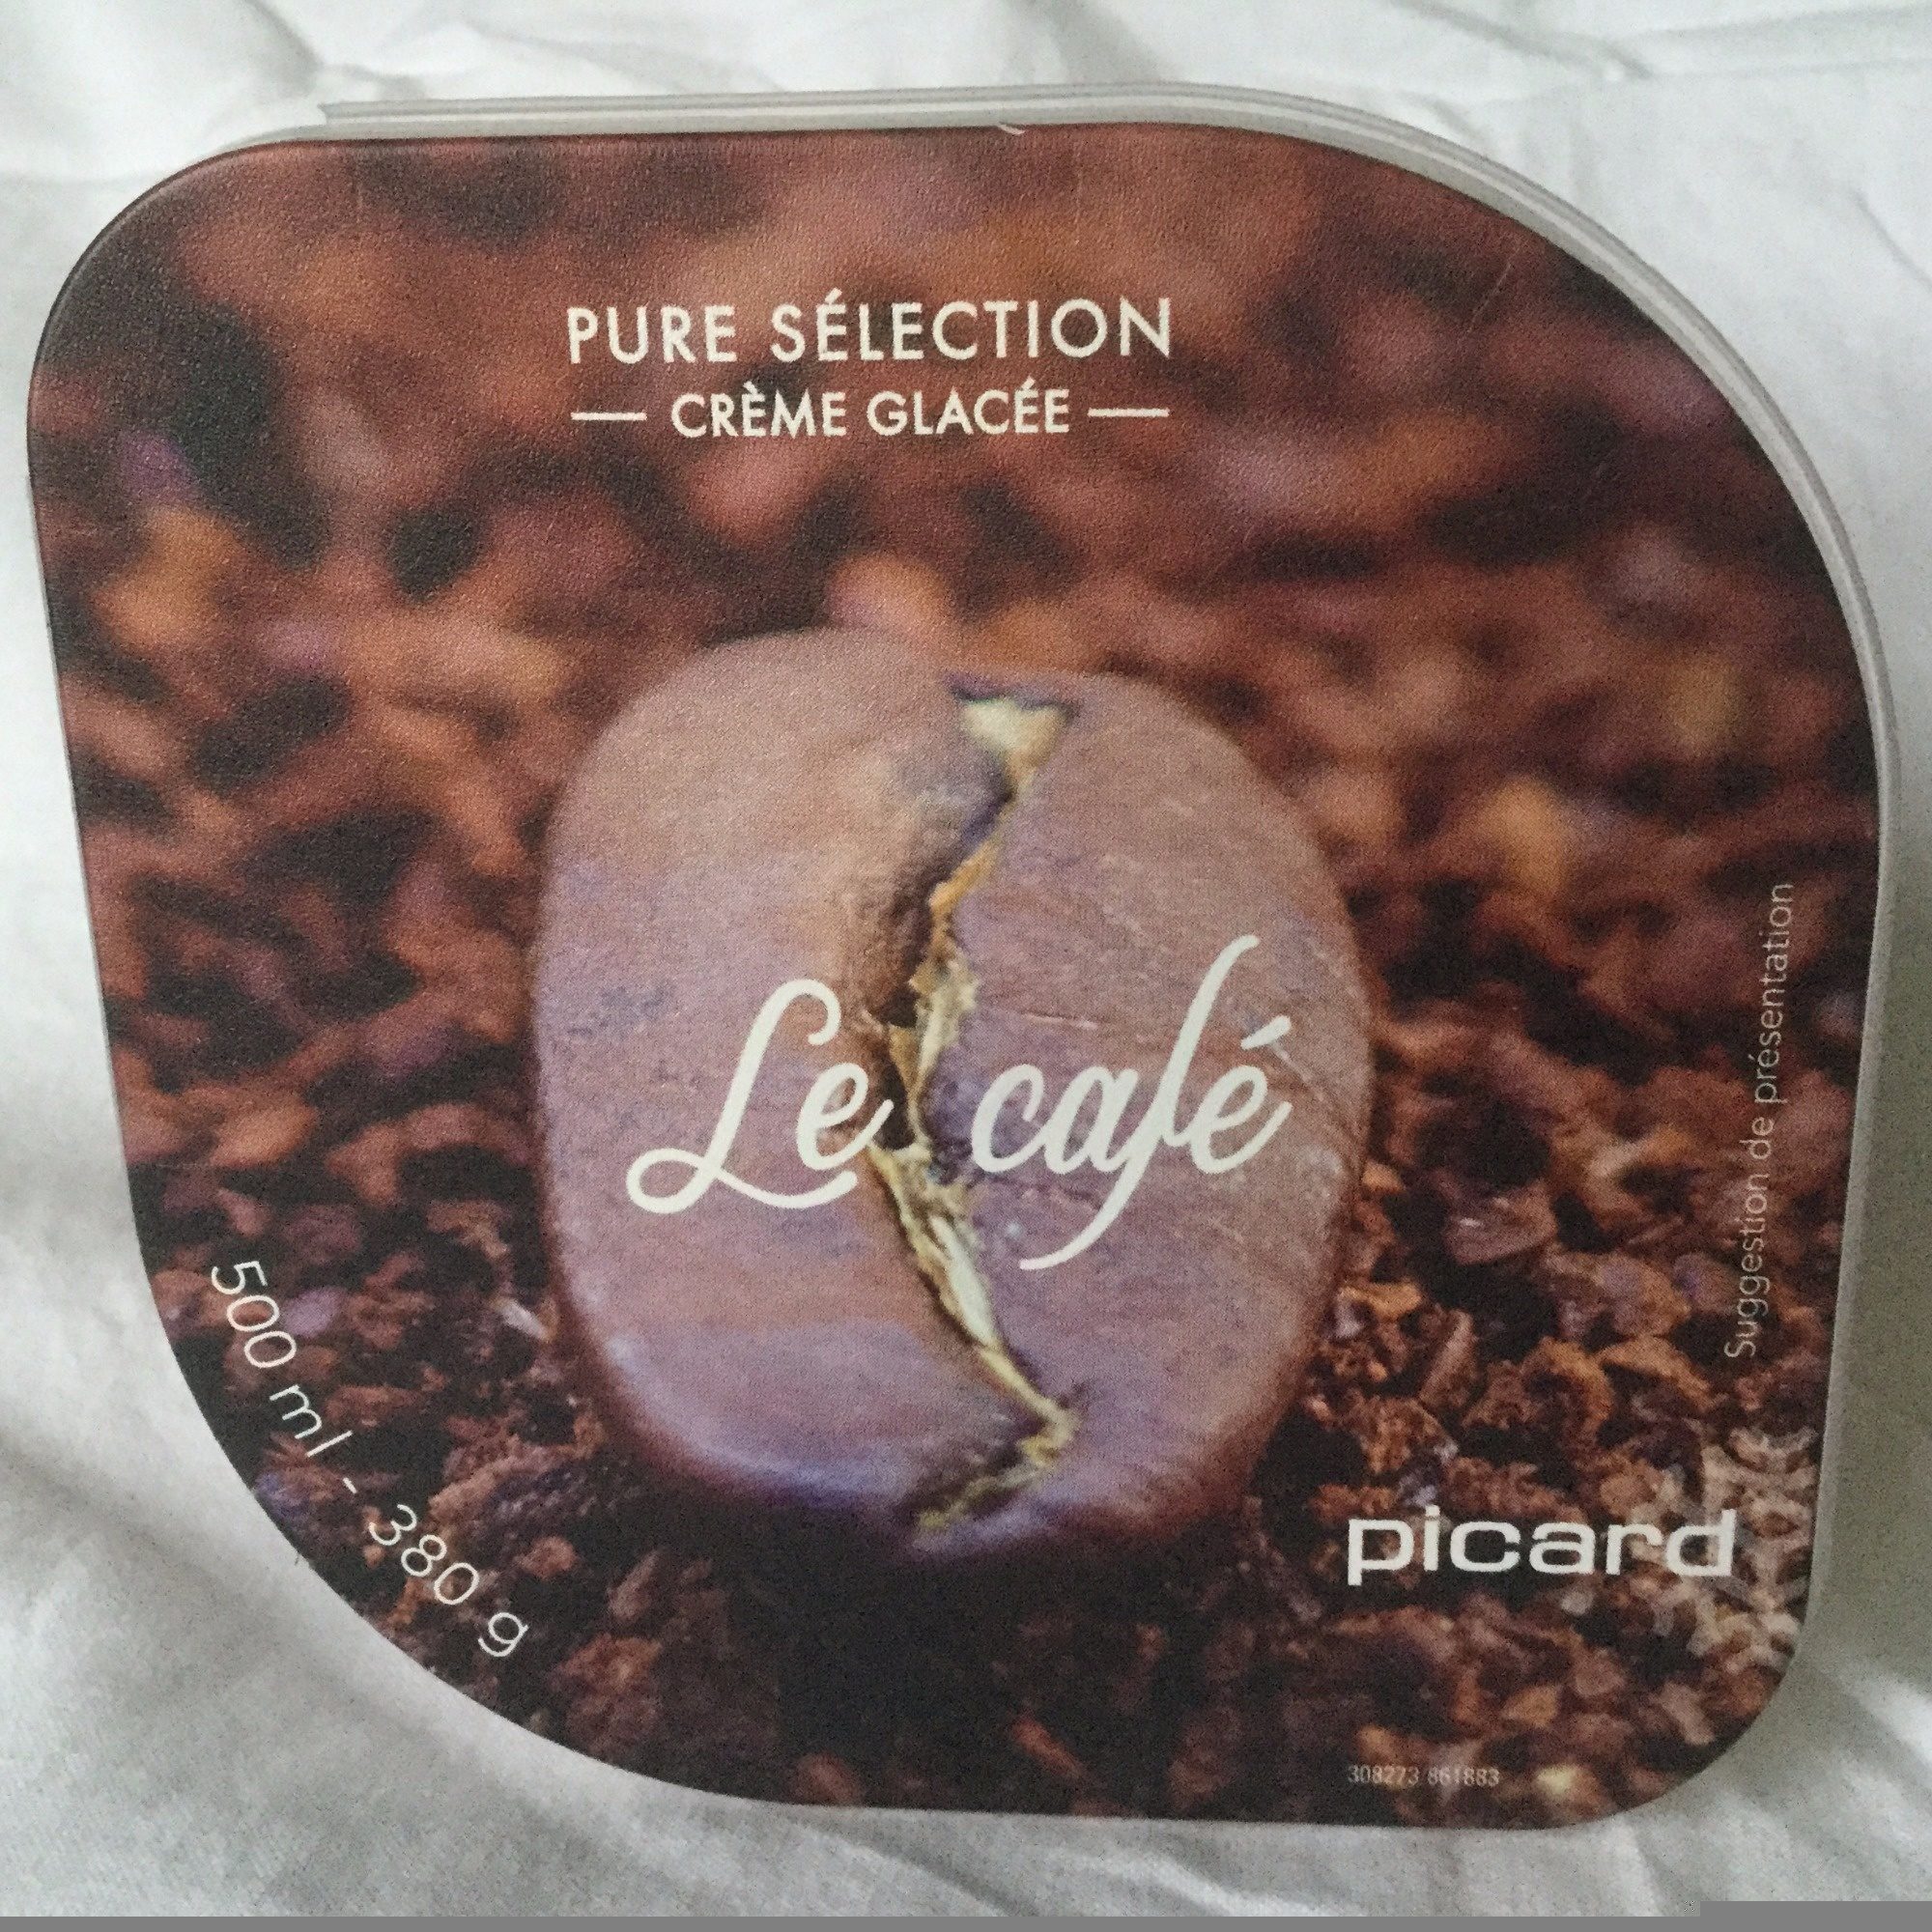 Pure sélection - Crème glacée Le café - Produkt - fr